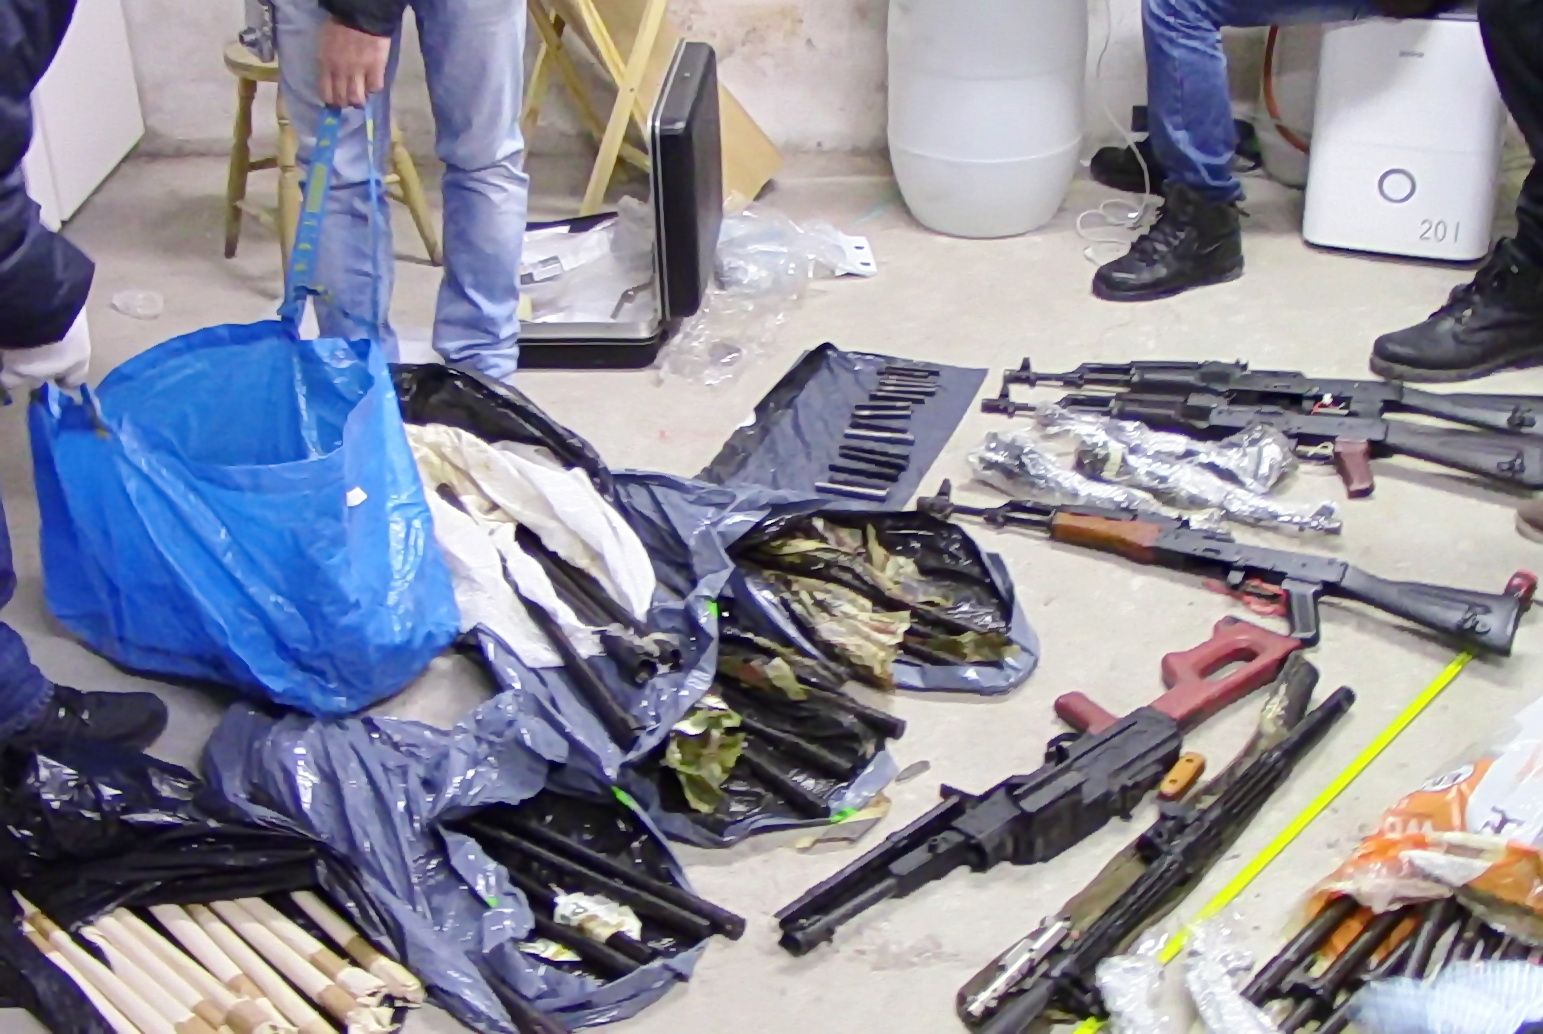 Разследващите откриха в столичния кв. "Редута" голямо количество автомати, пистолети и друго оръжие